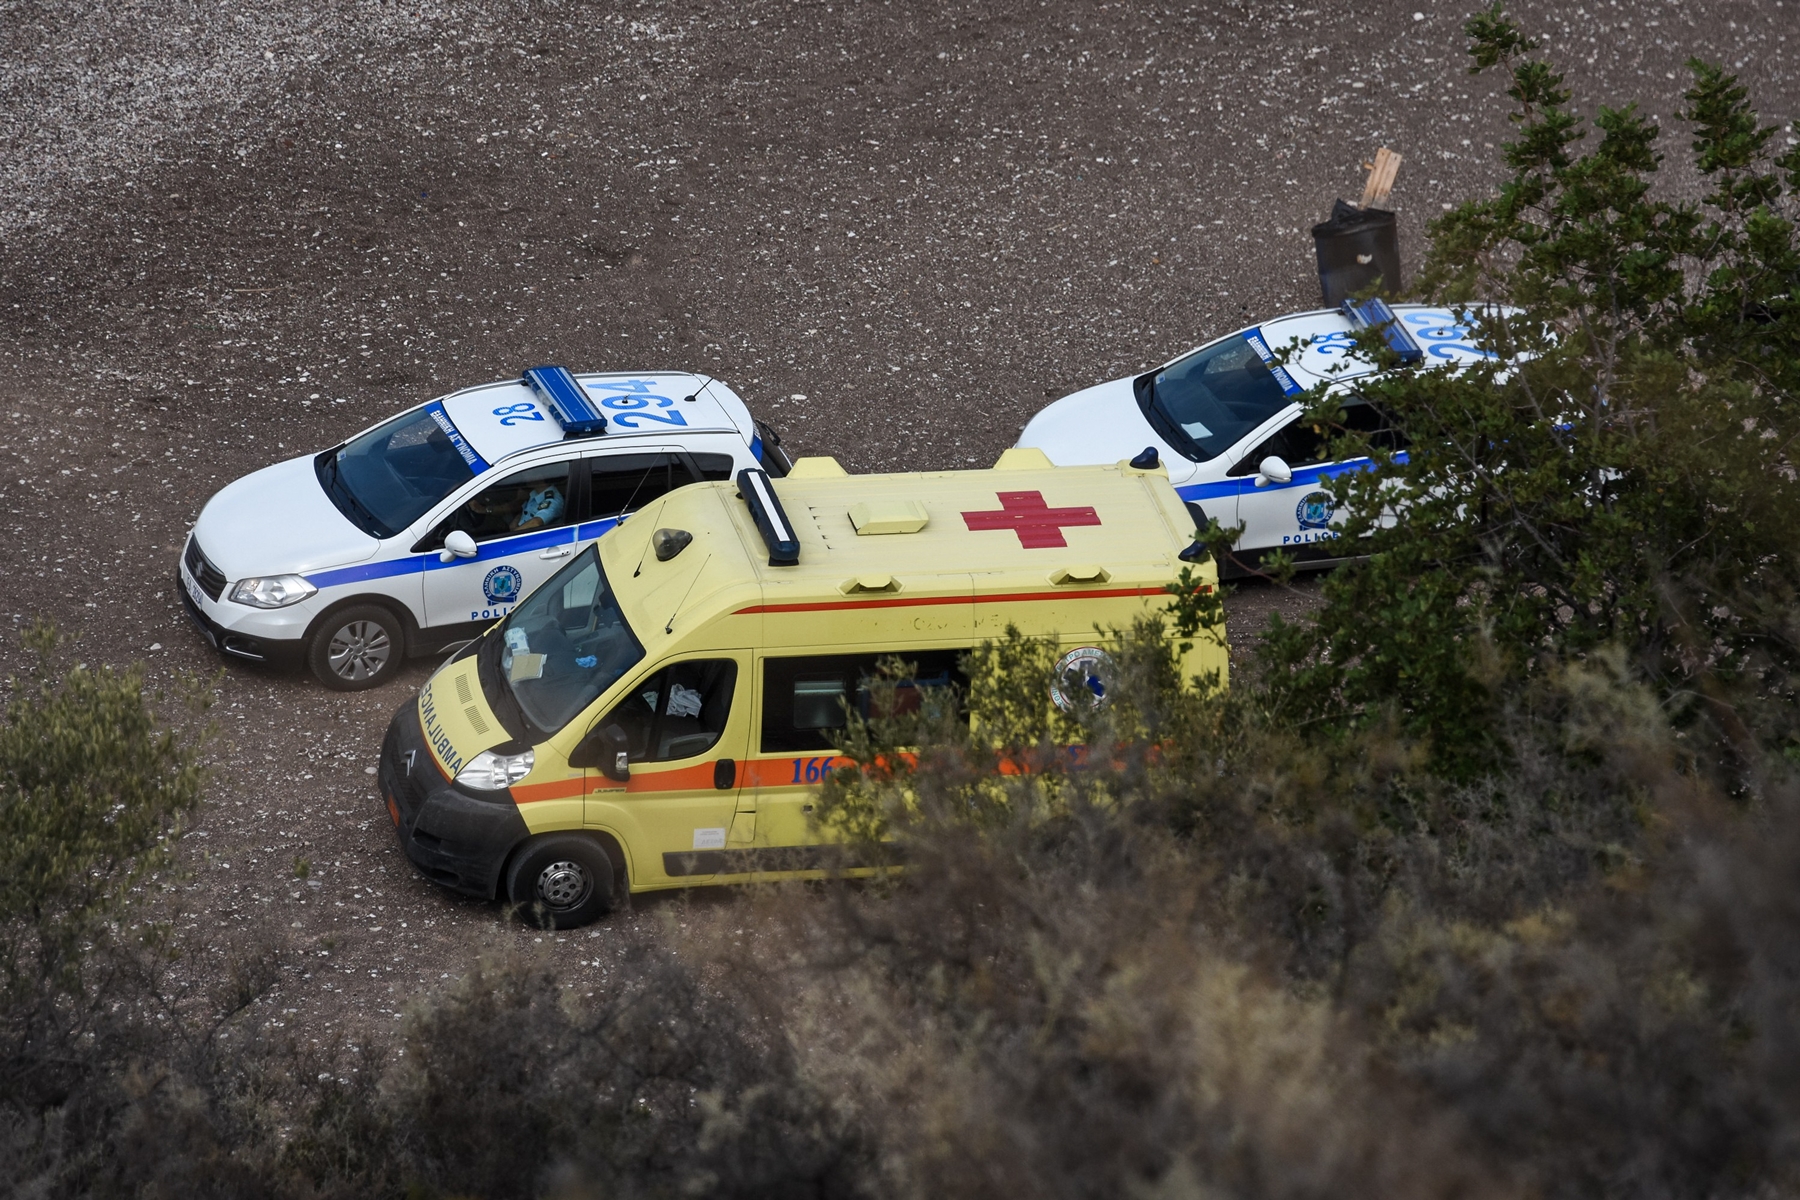 Έπεσε σε γκρεμό – Κρήτη: Σοβαρό τροχαίο ατύχημα με εγκλωβισμό ατόμου